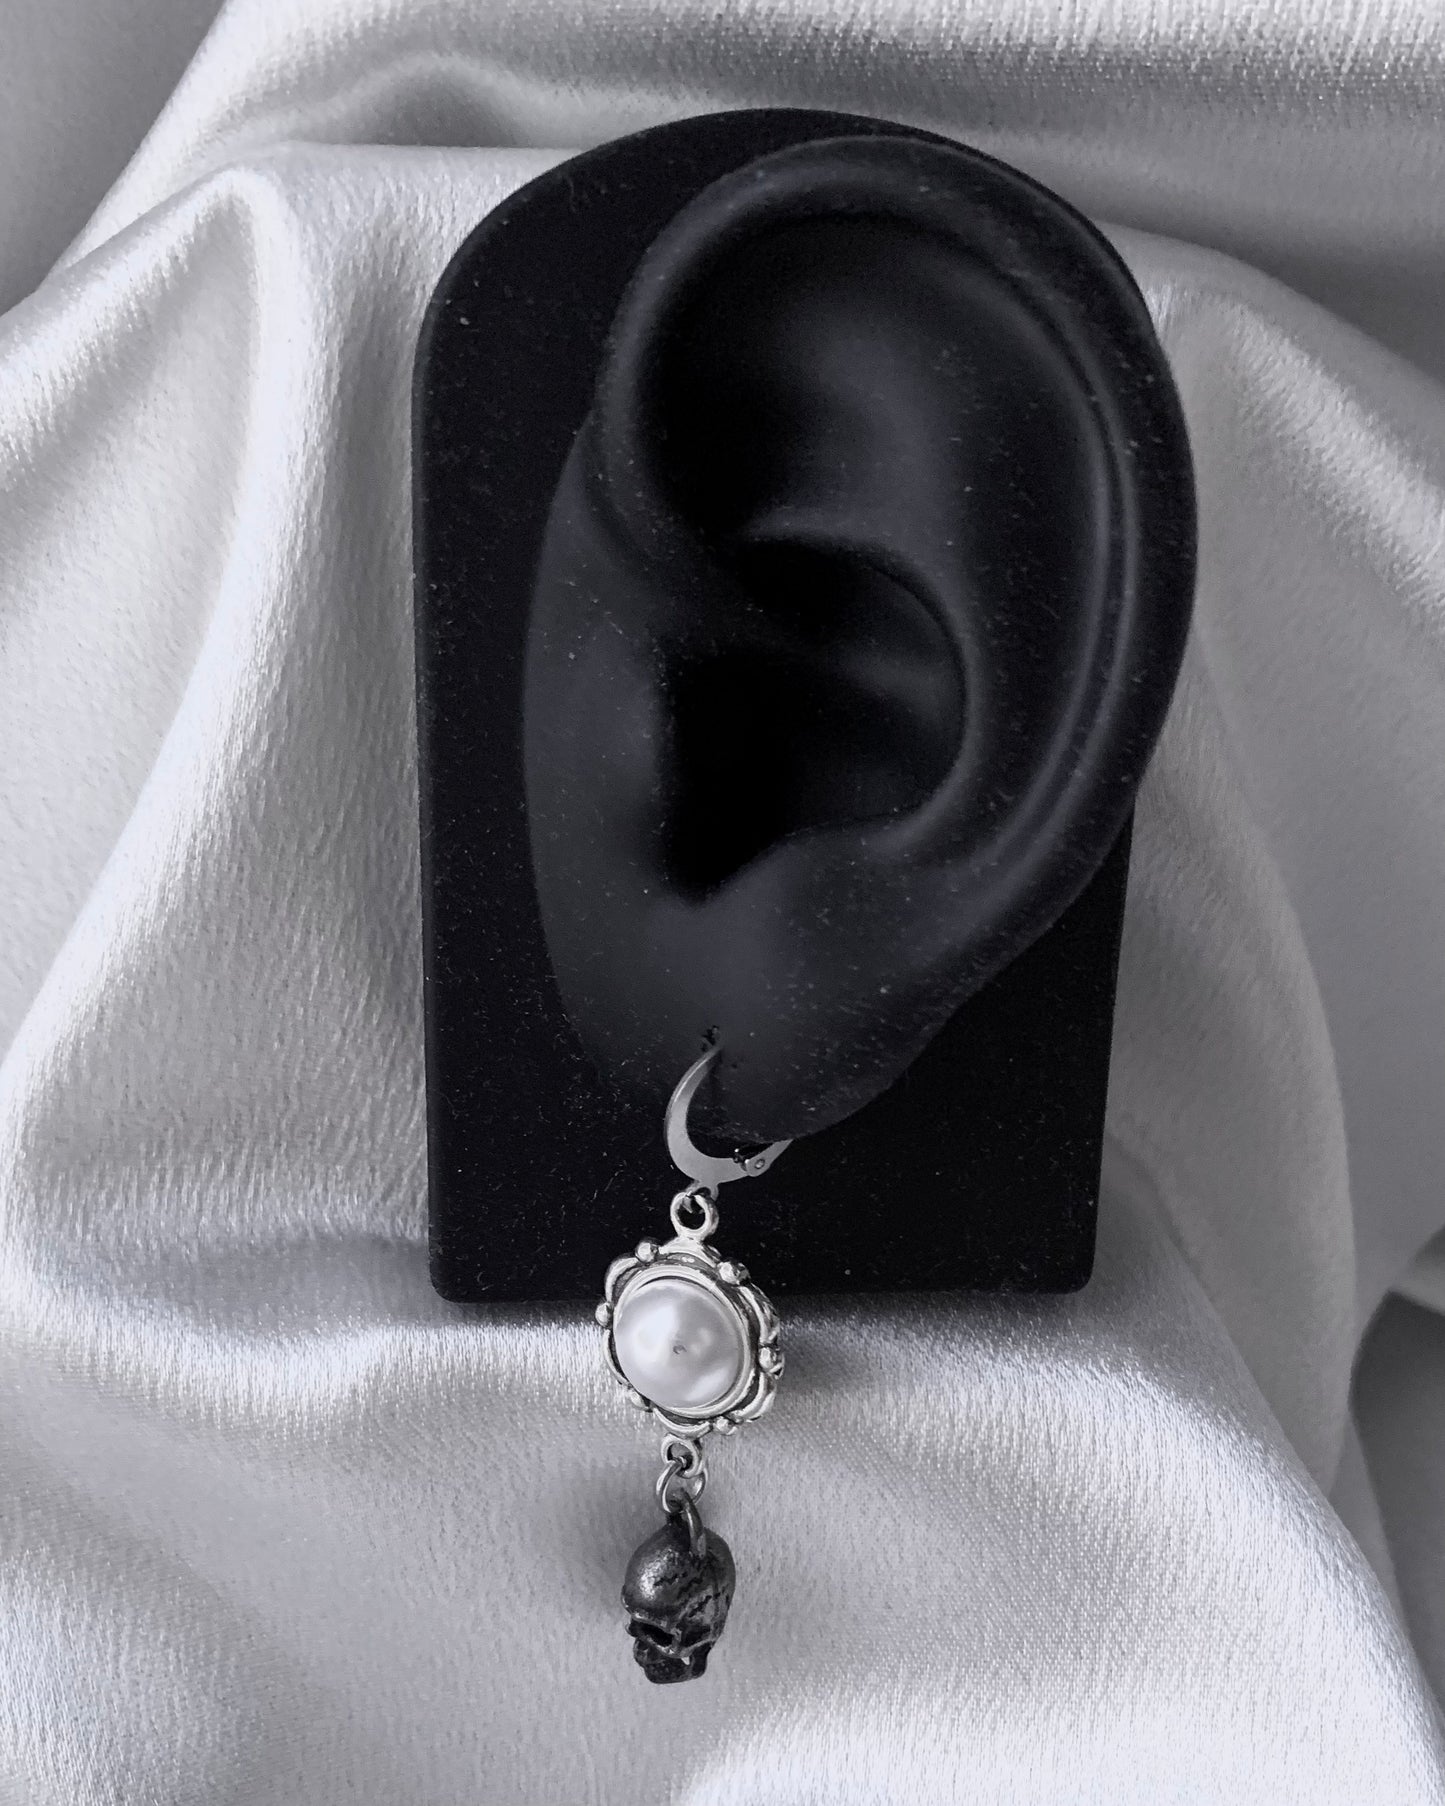 Cranium earrings